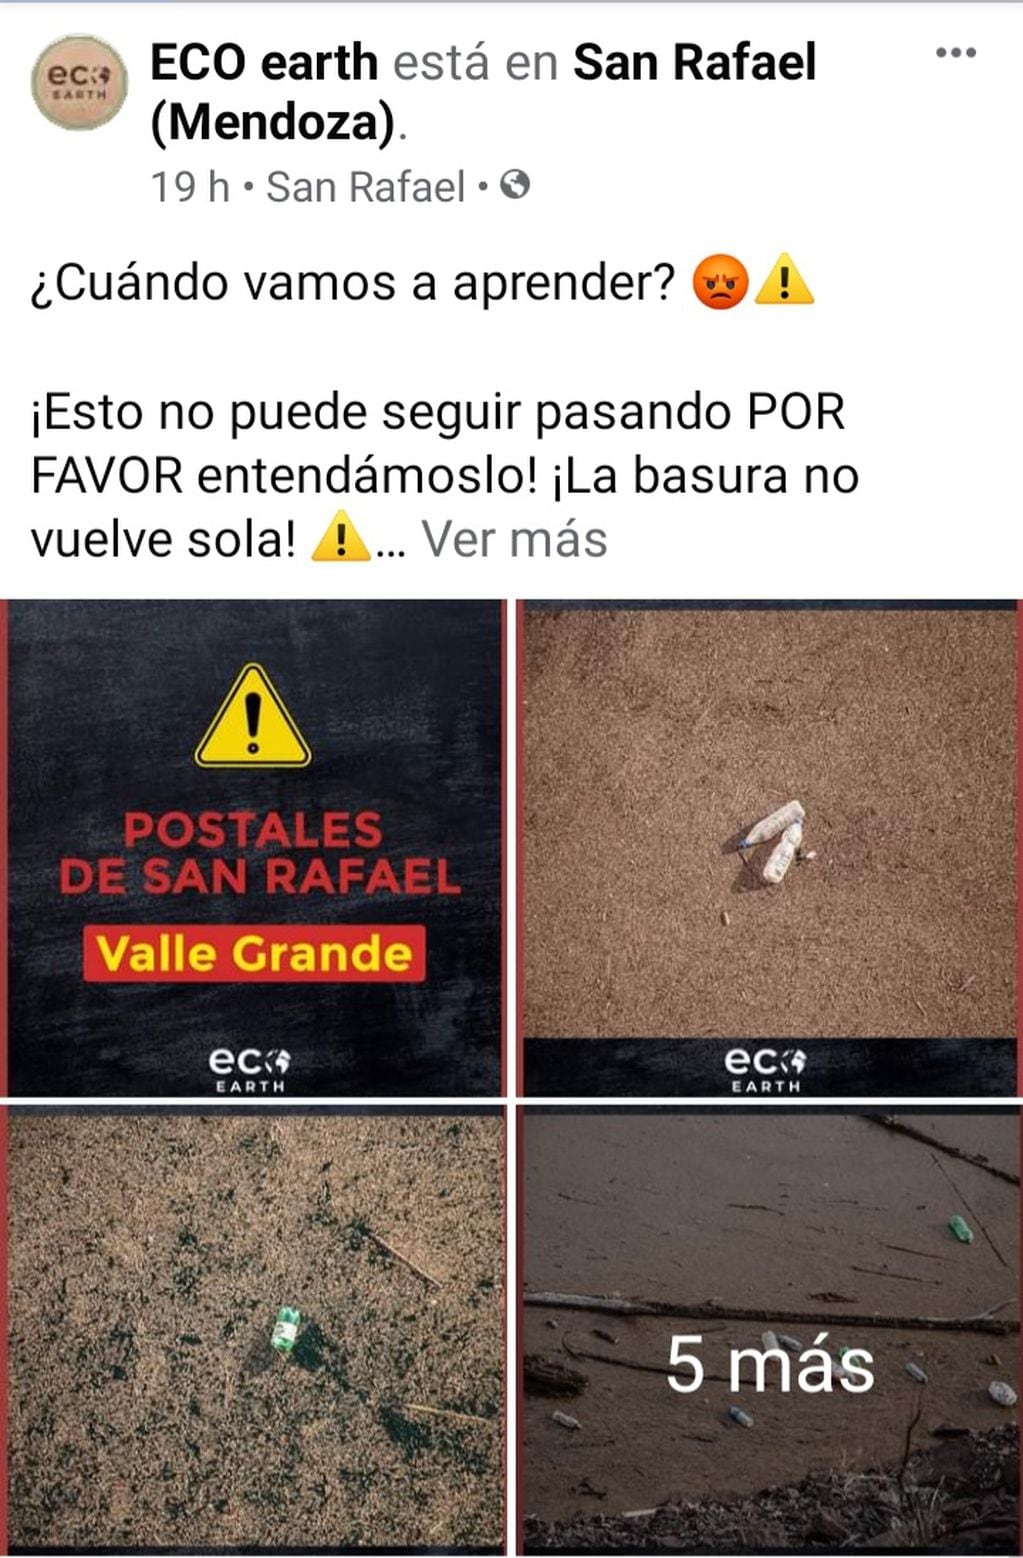 El posteo en Facebook de la organización Eco Earth pone de manifiesto la impotencia al encontrar tantos residuos luego de que se van los visitantes de Valle Grande.